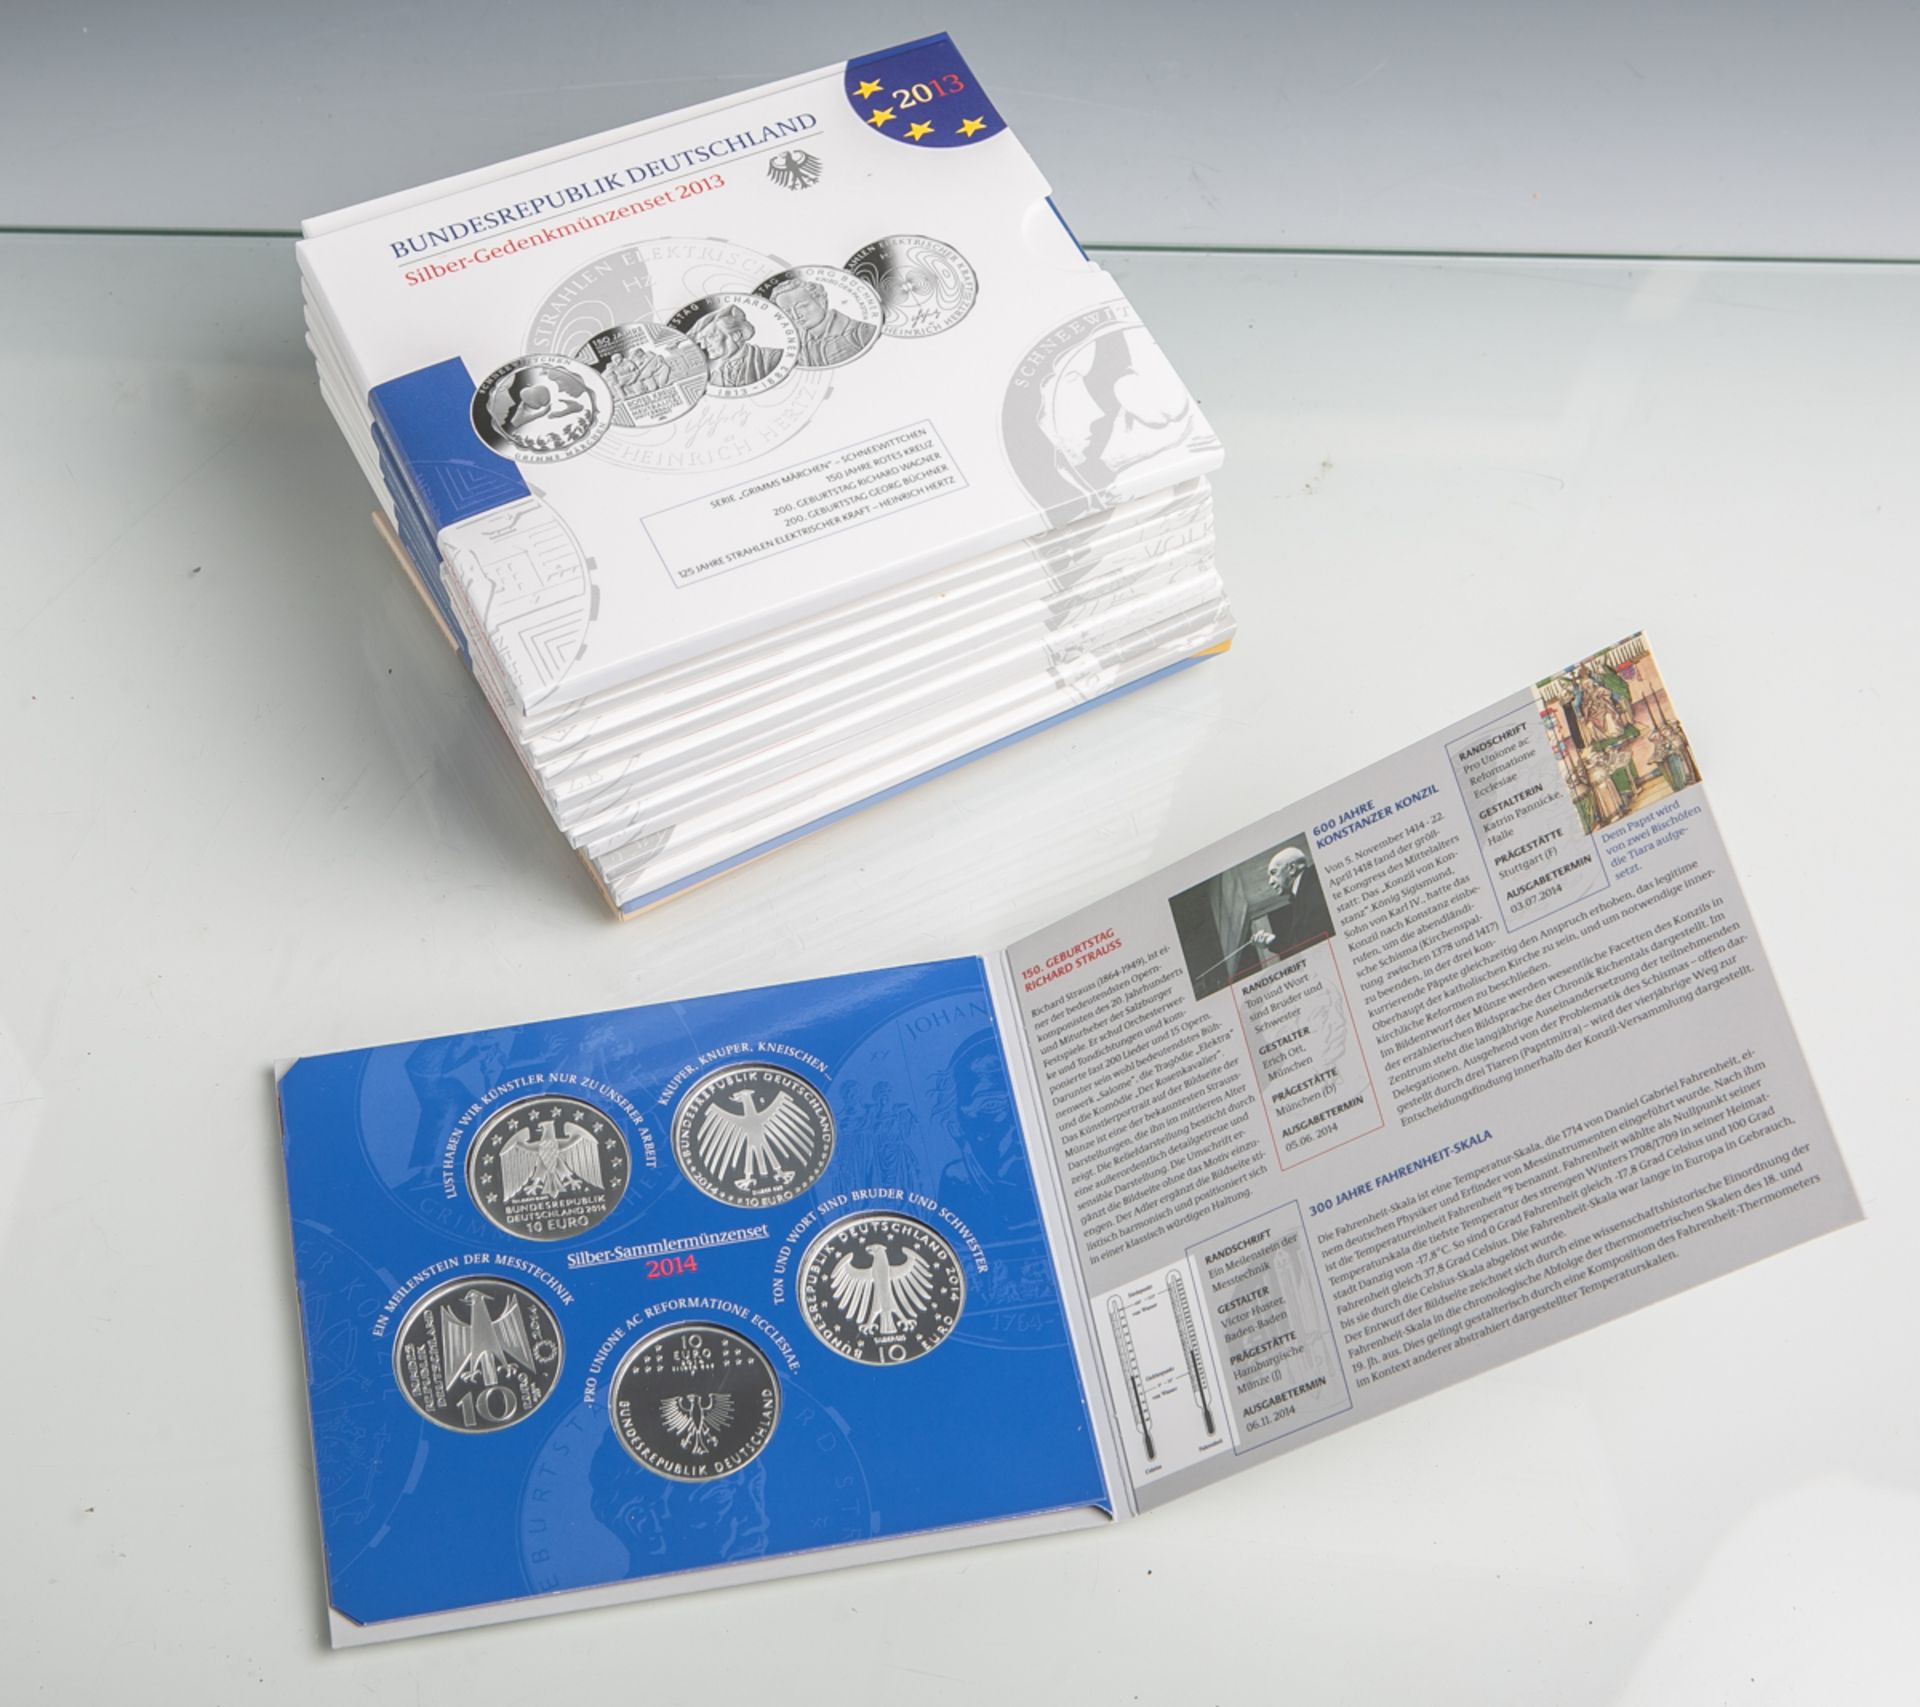 14 Silber-Sammlermünzensets (BRD, 2002 - 2015), 925/1000 Silber / Sterlingsilber,komplett, Motive: